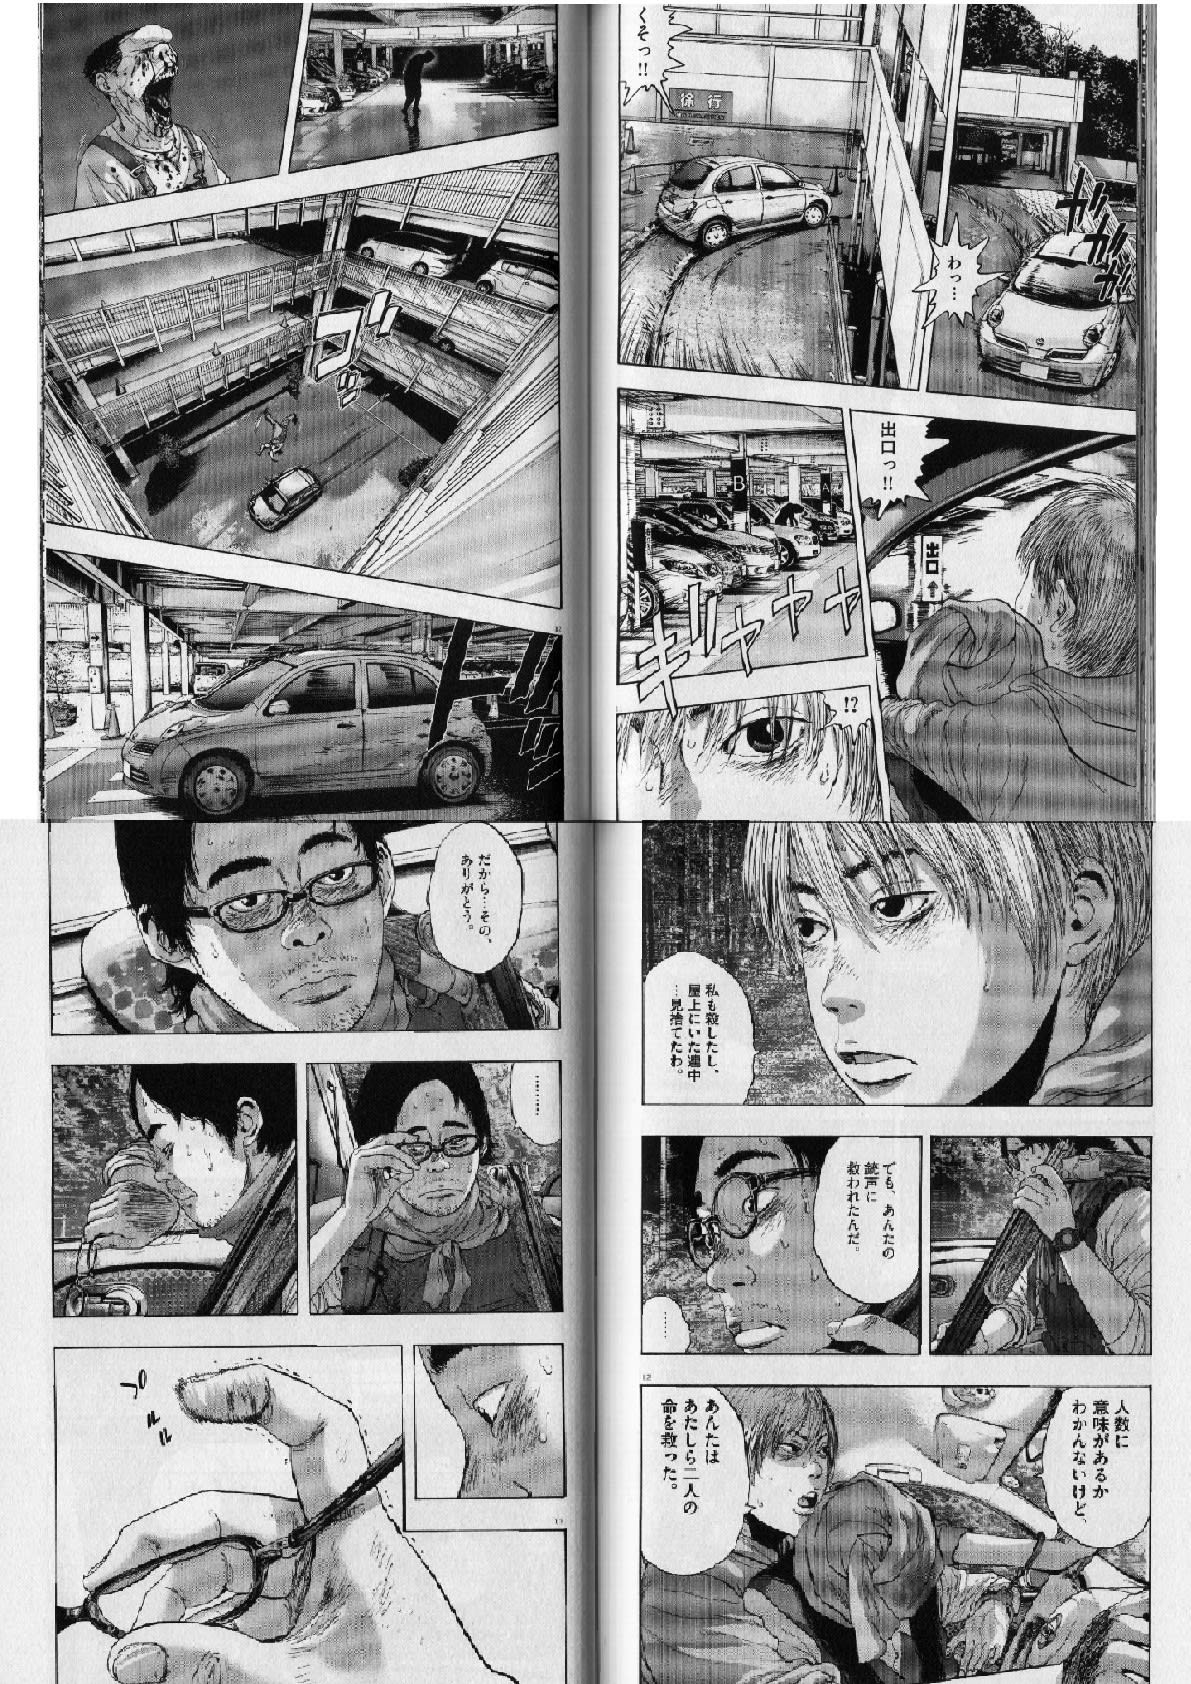 アイアムアヒーロー 村井君は死んでしまった 奇跡的に車に救助される英雄そして 個人的に気に入った漫画だったり 書籍だったりを気まぐれで紹介するモトブログおじさん